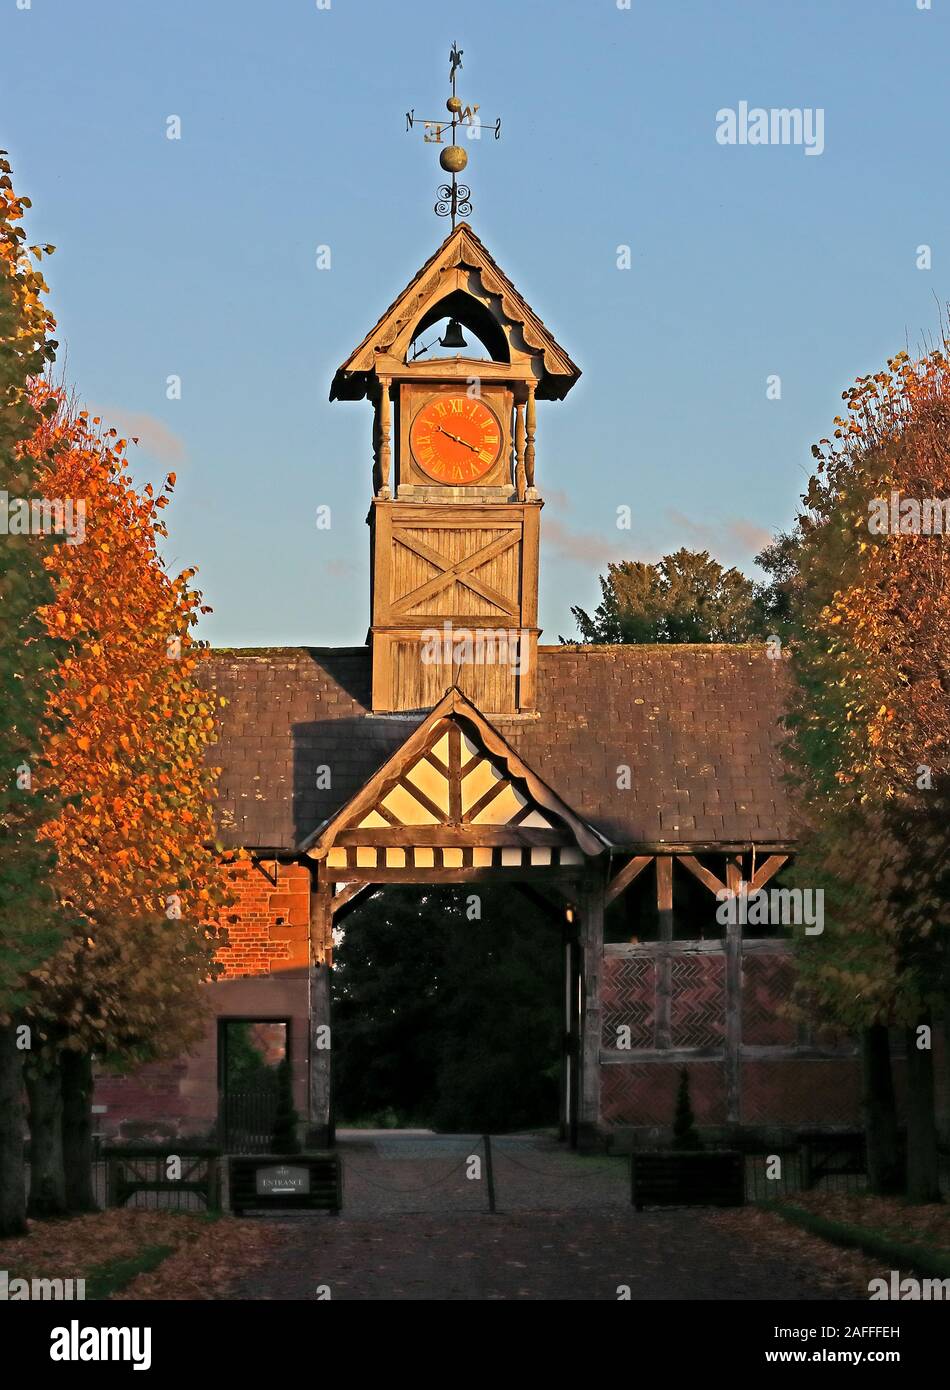 Tour d'entrée et horloge, Arley Hall, Back LN, Arley, Northwich, Cheshire, Angleterre, Royaume-Uni, CW9 6NA, en automne Banque D'Images